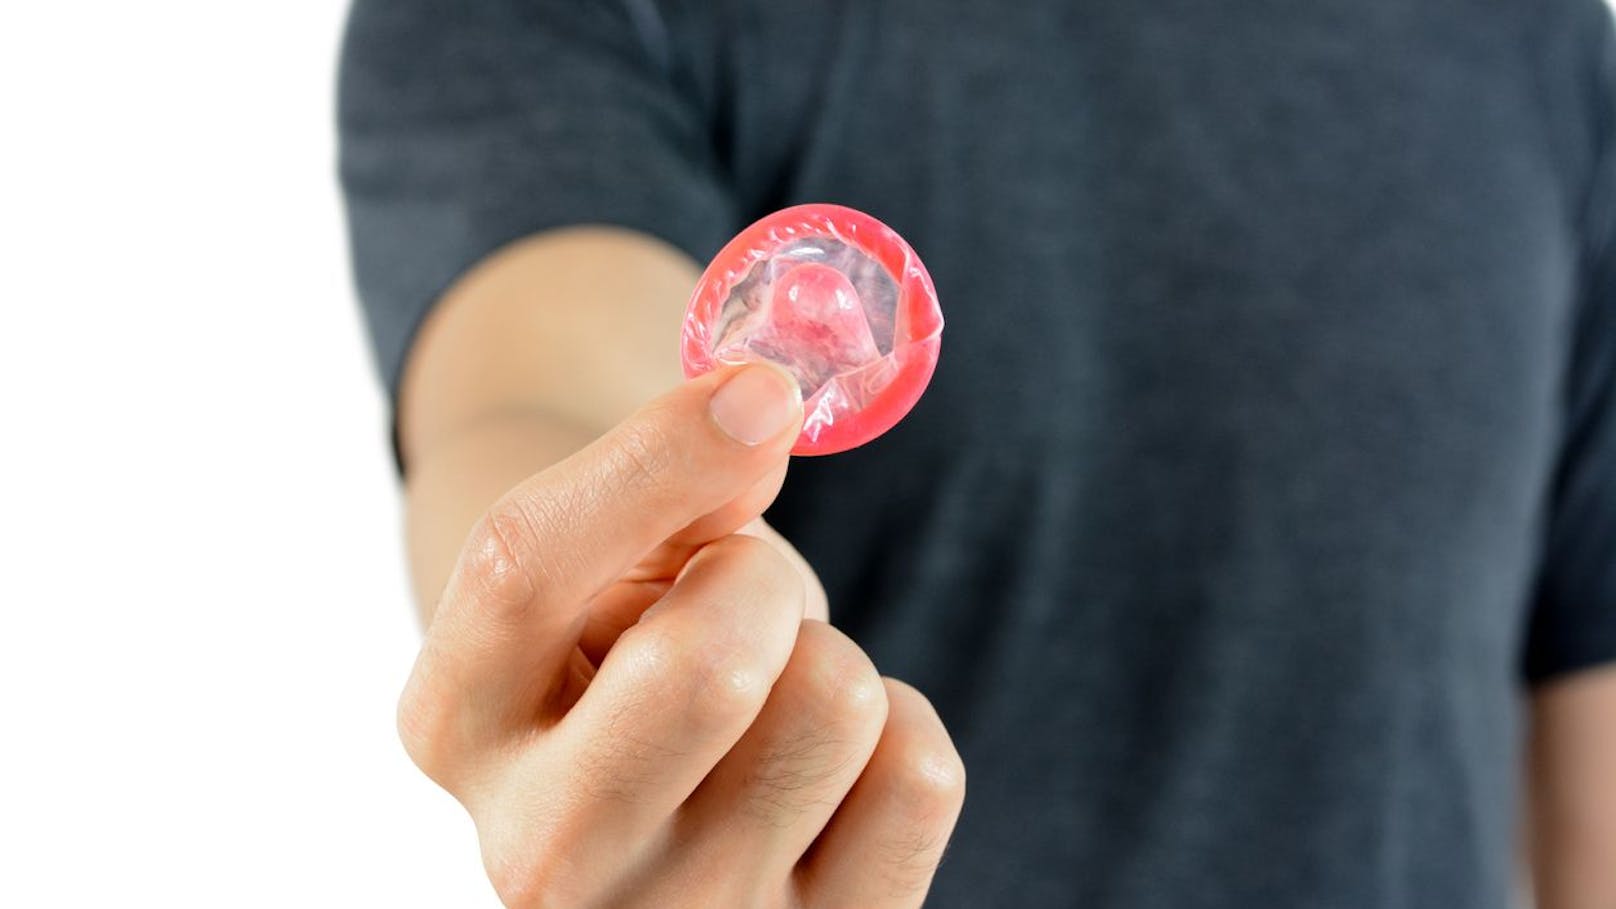 Mann entfernte heimlich Kondom während Sex – verurteilt